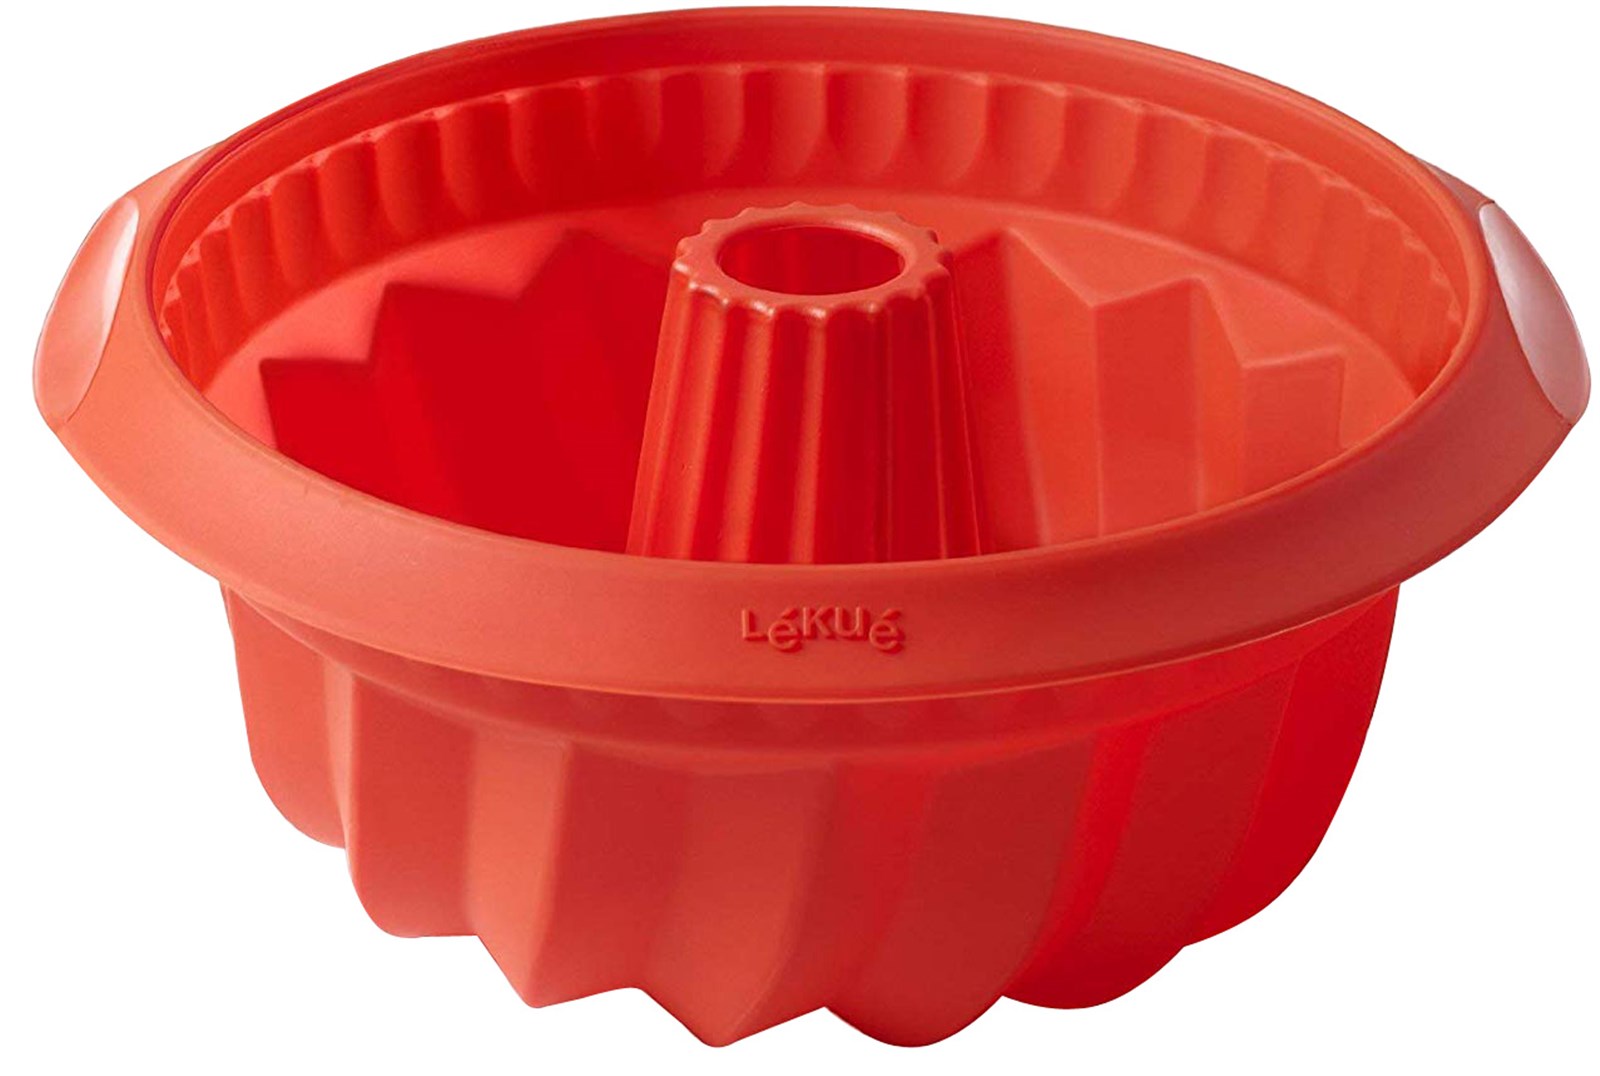 Backform Gugelhopf Rot, 22x11.5 cm in Rot präsentiert im Onlineshop von KAQTU Design AG. Backen ist von Lékué